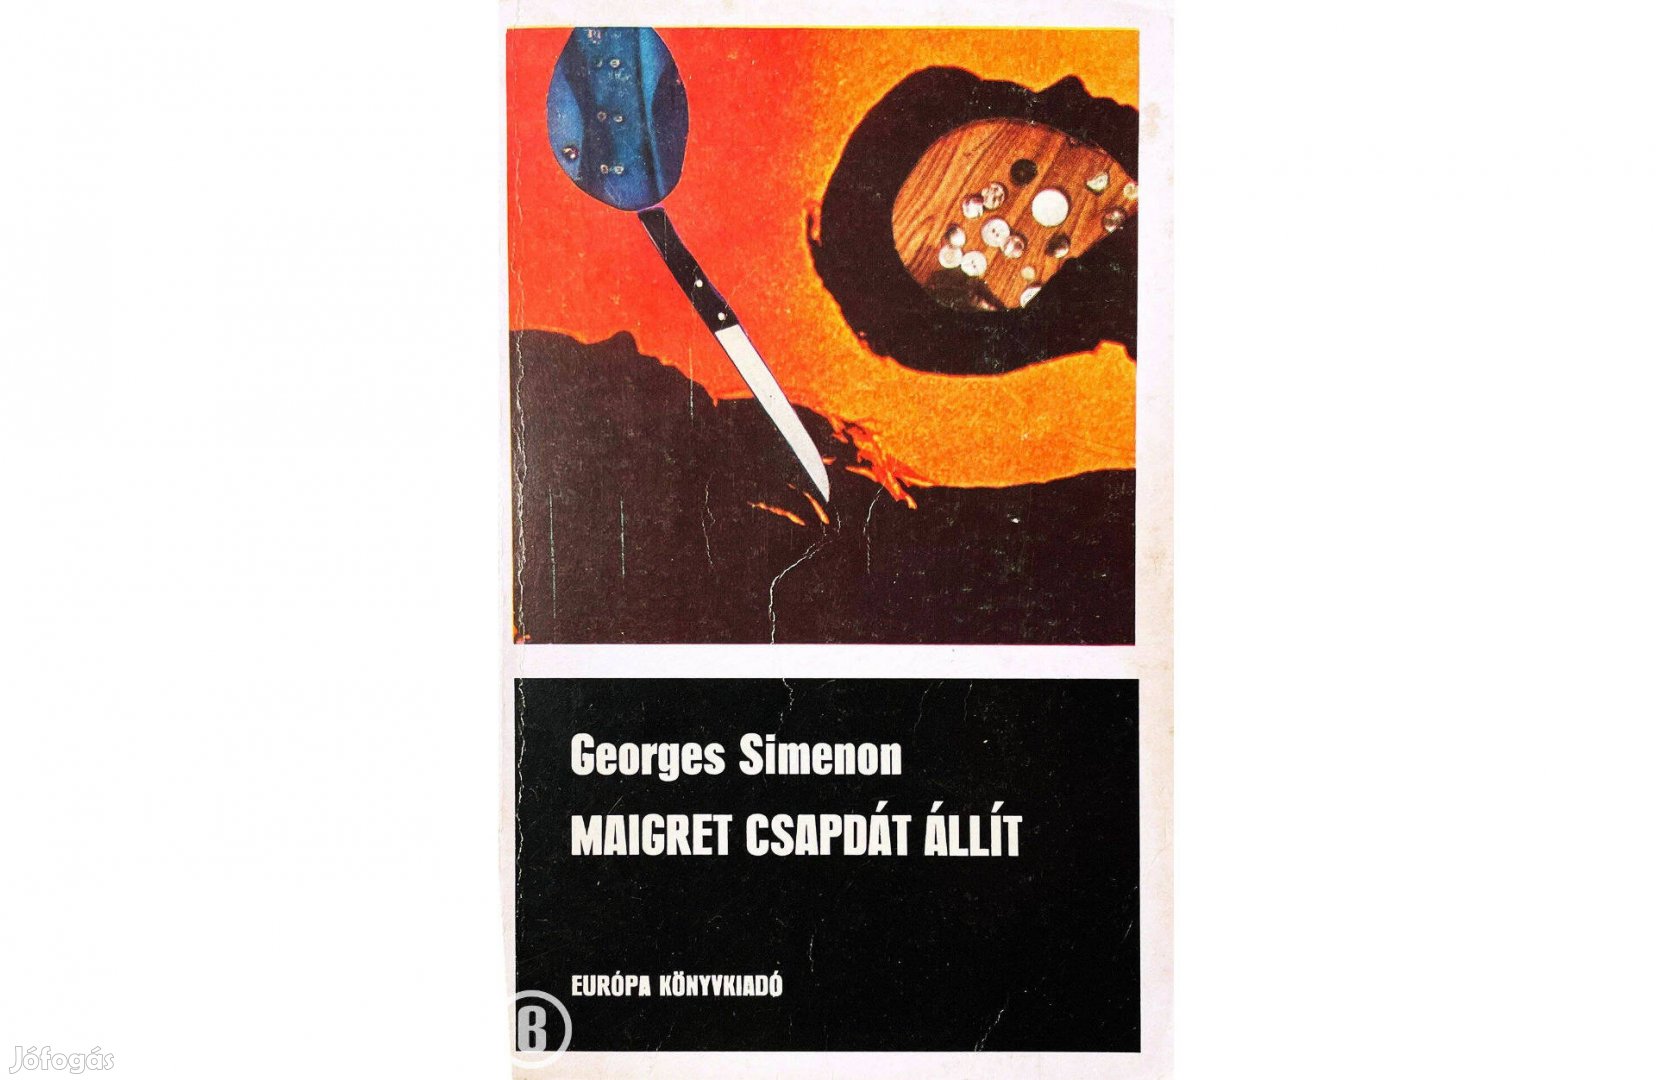 Georges Simenon: Maigret csapdát állít (2 történet)